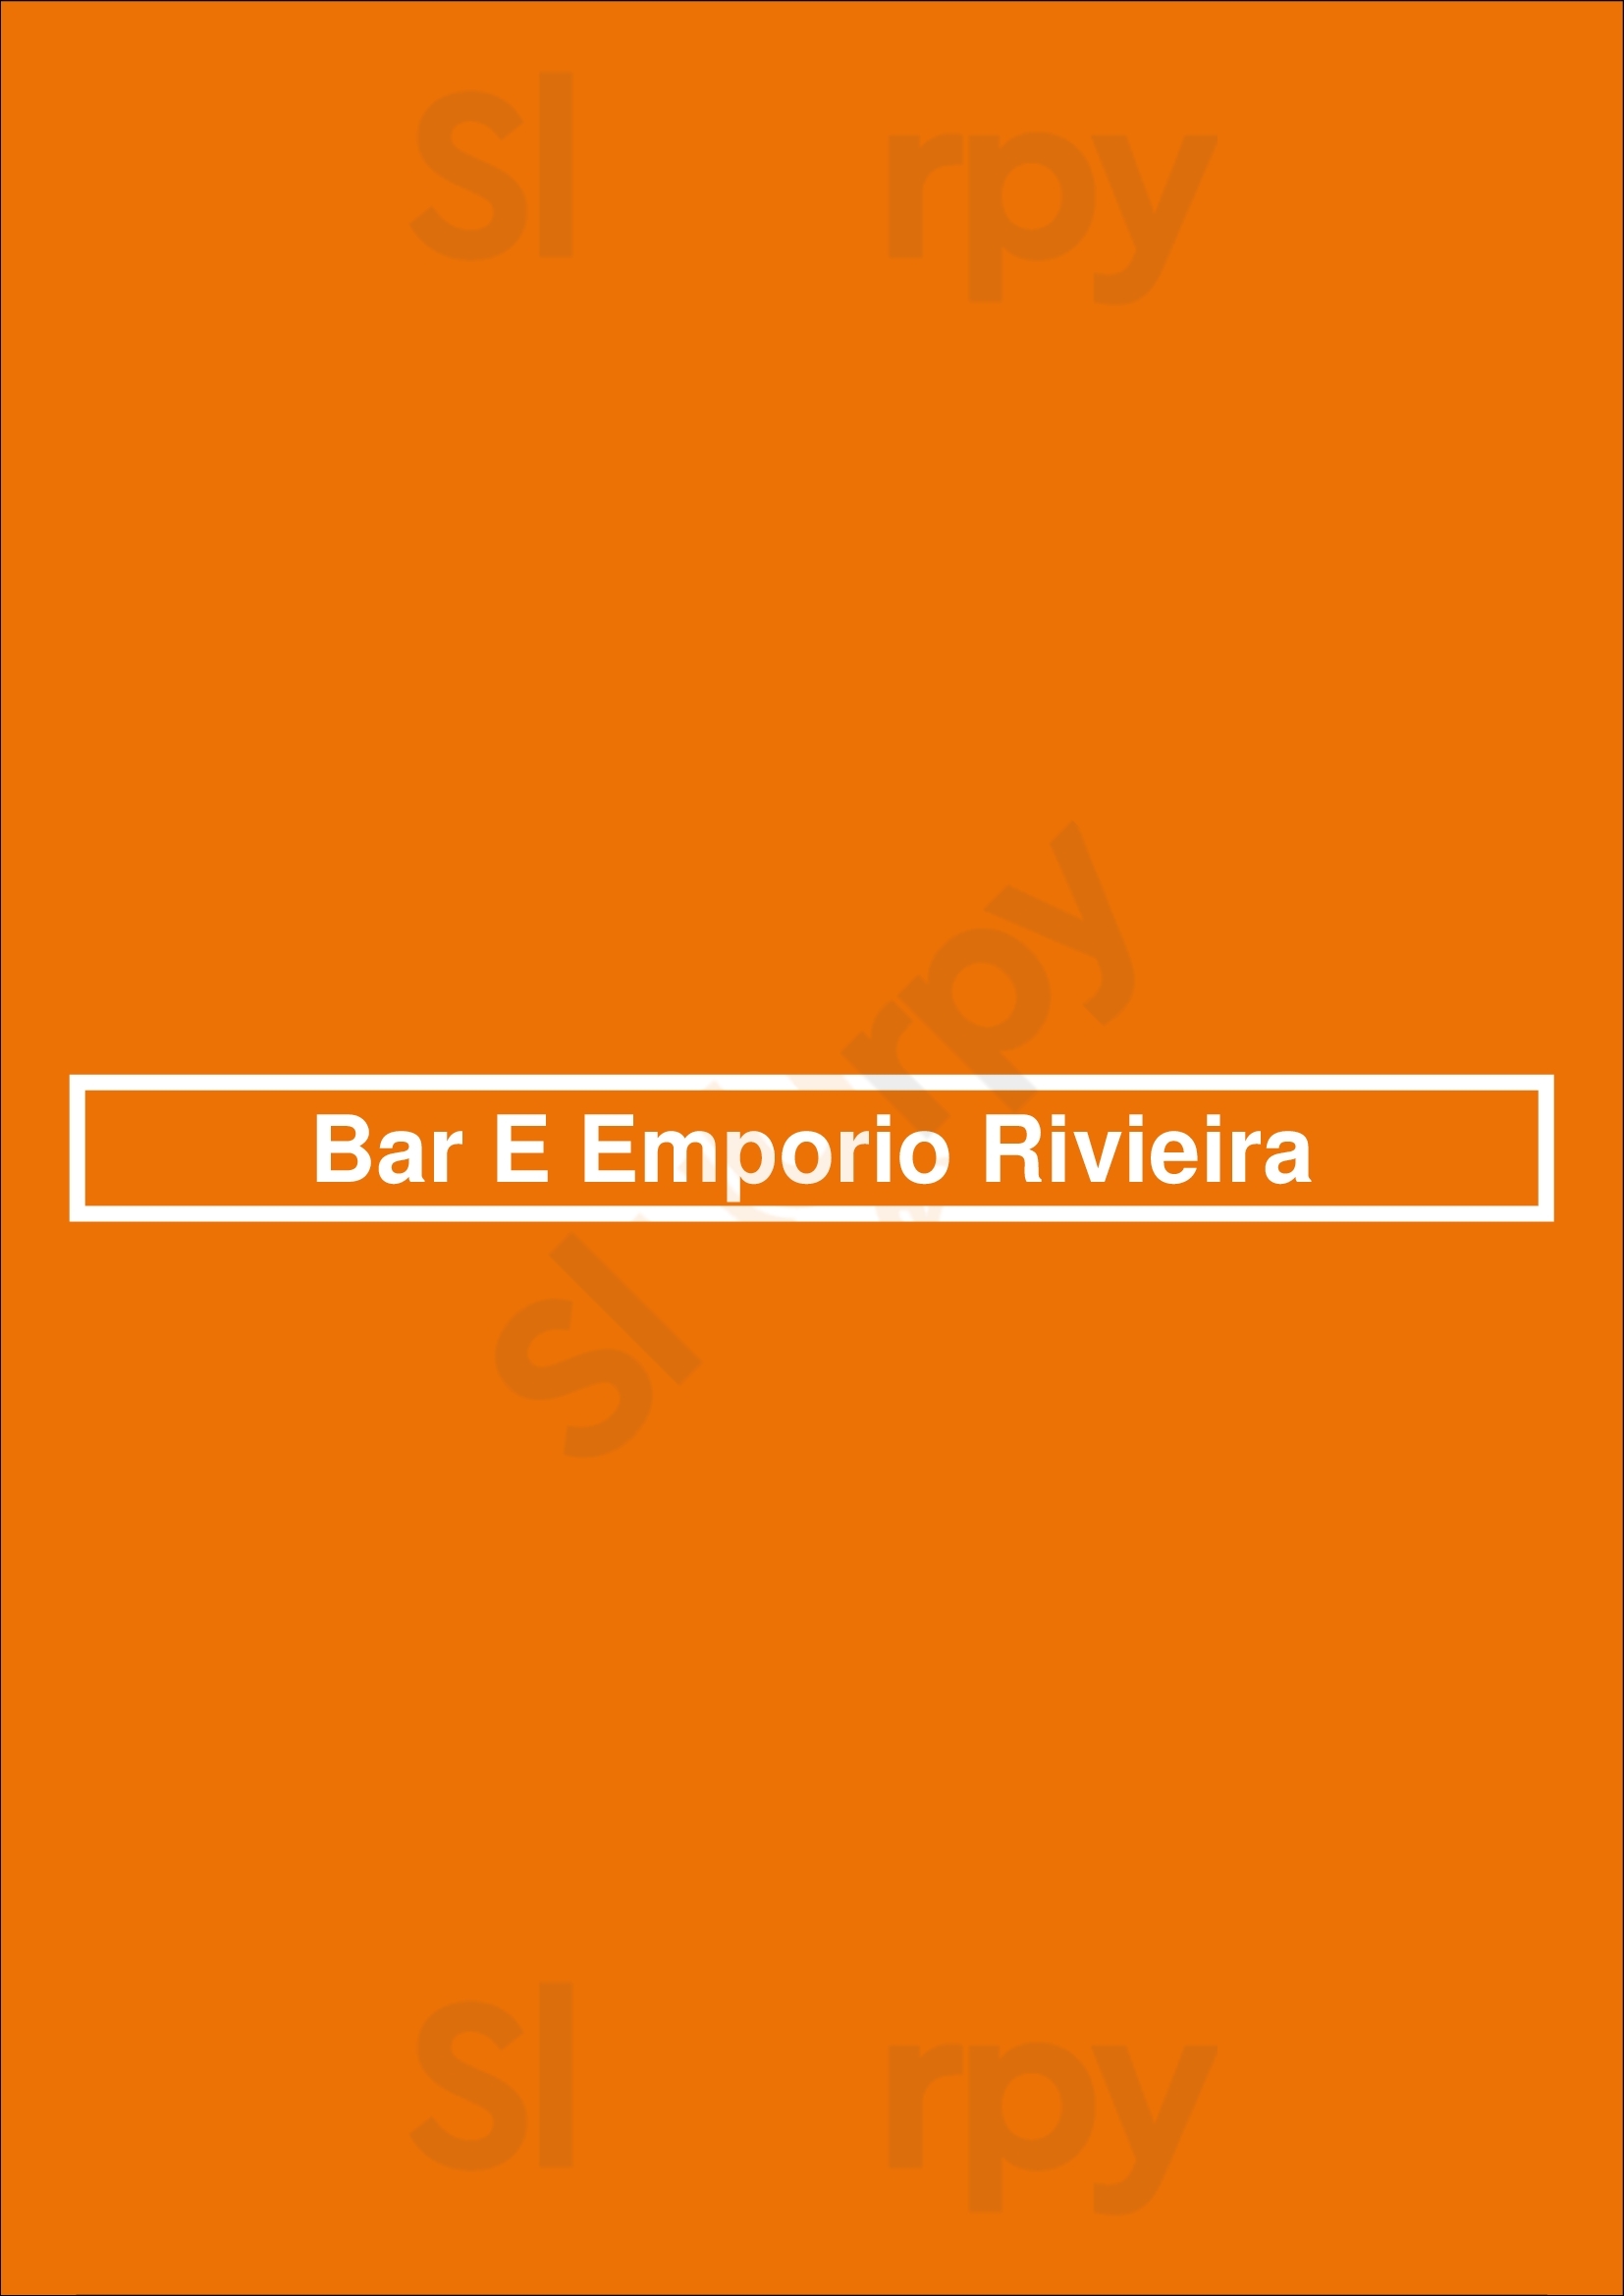 Bar E Emporio Rivieira São Paulo Menu - 1